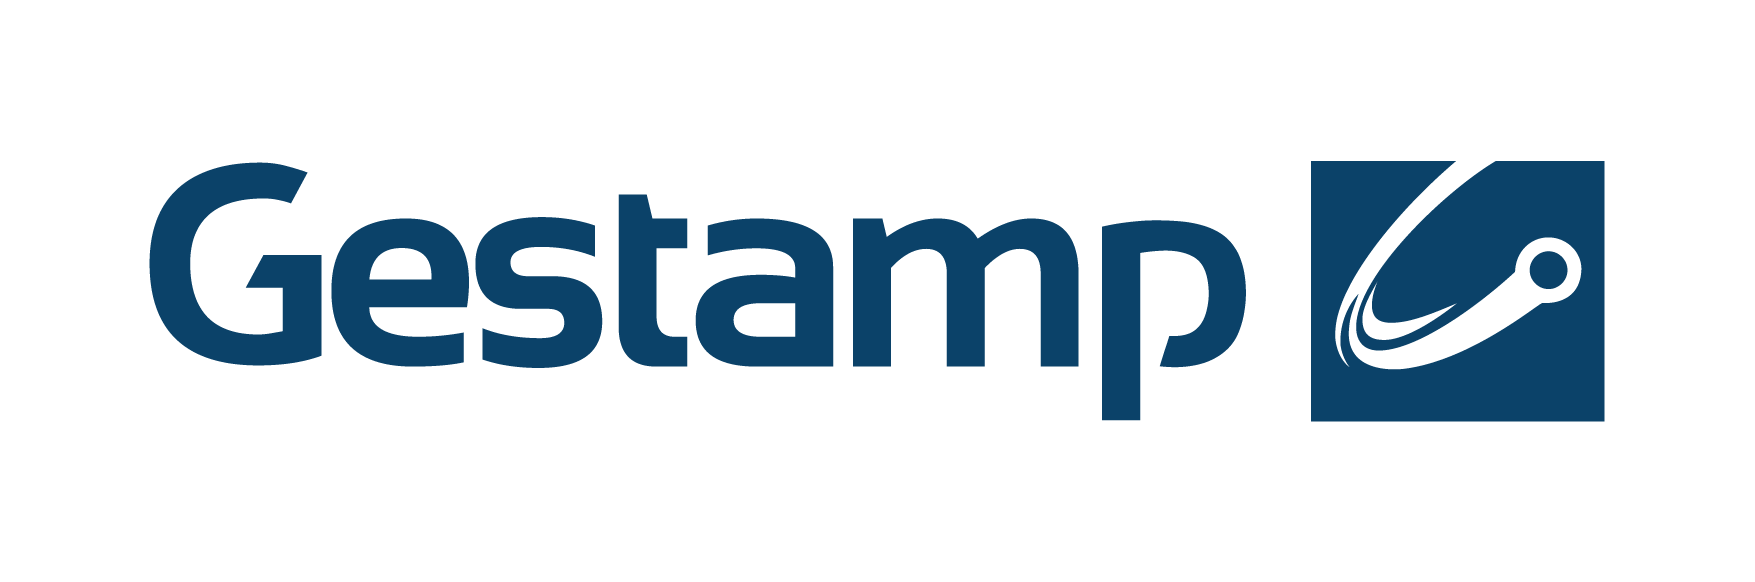 GESTAMP logo